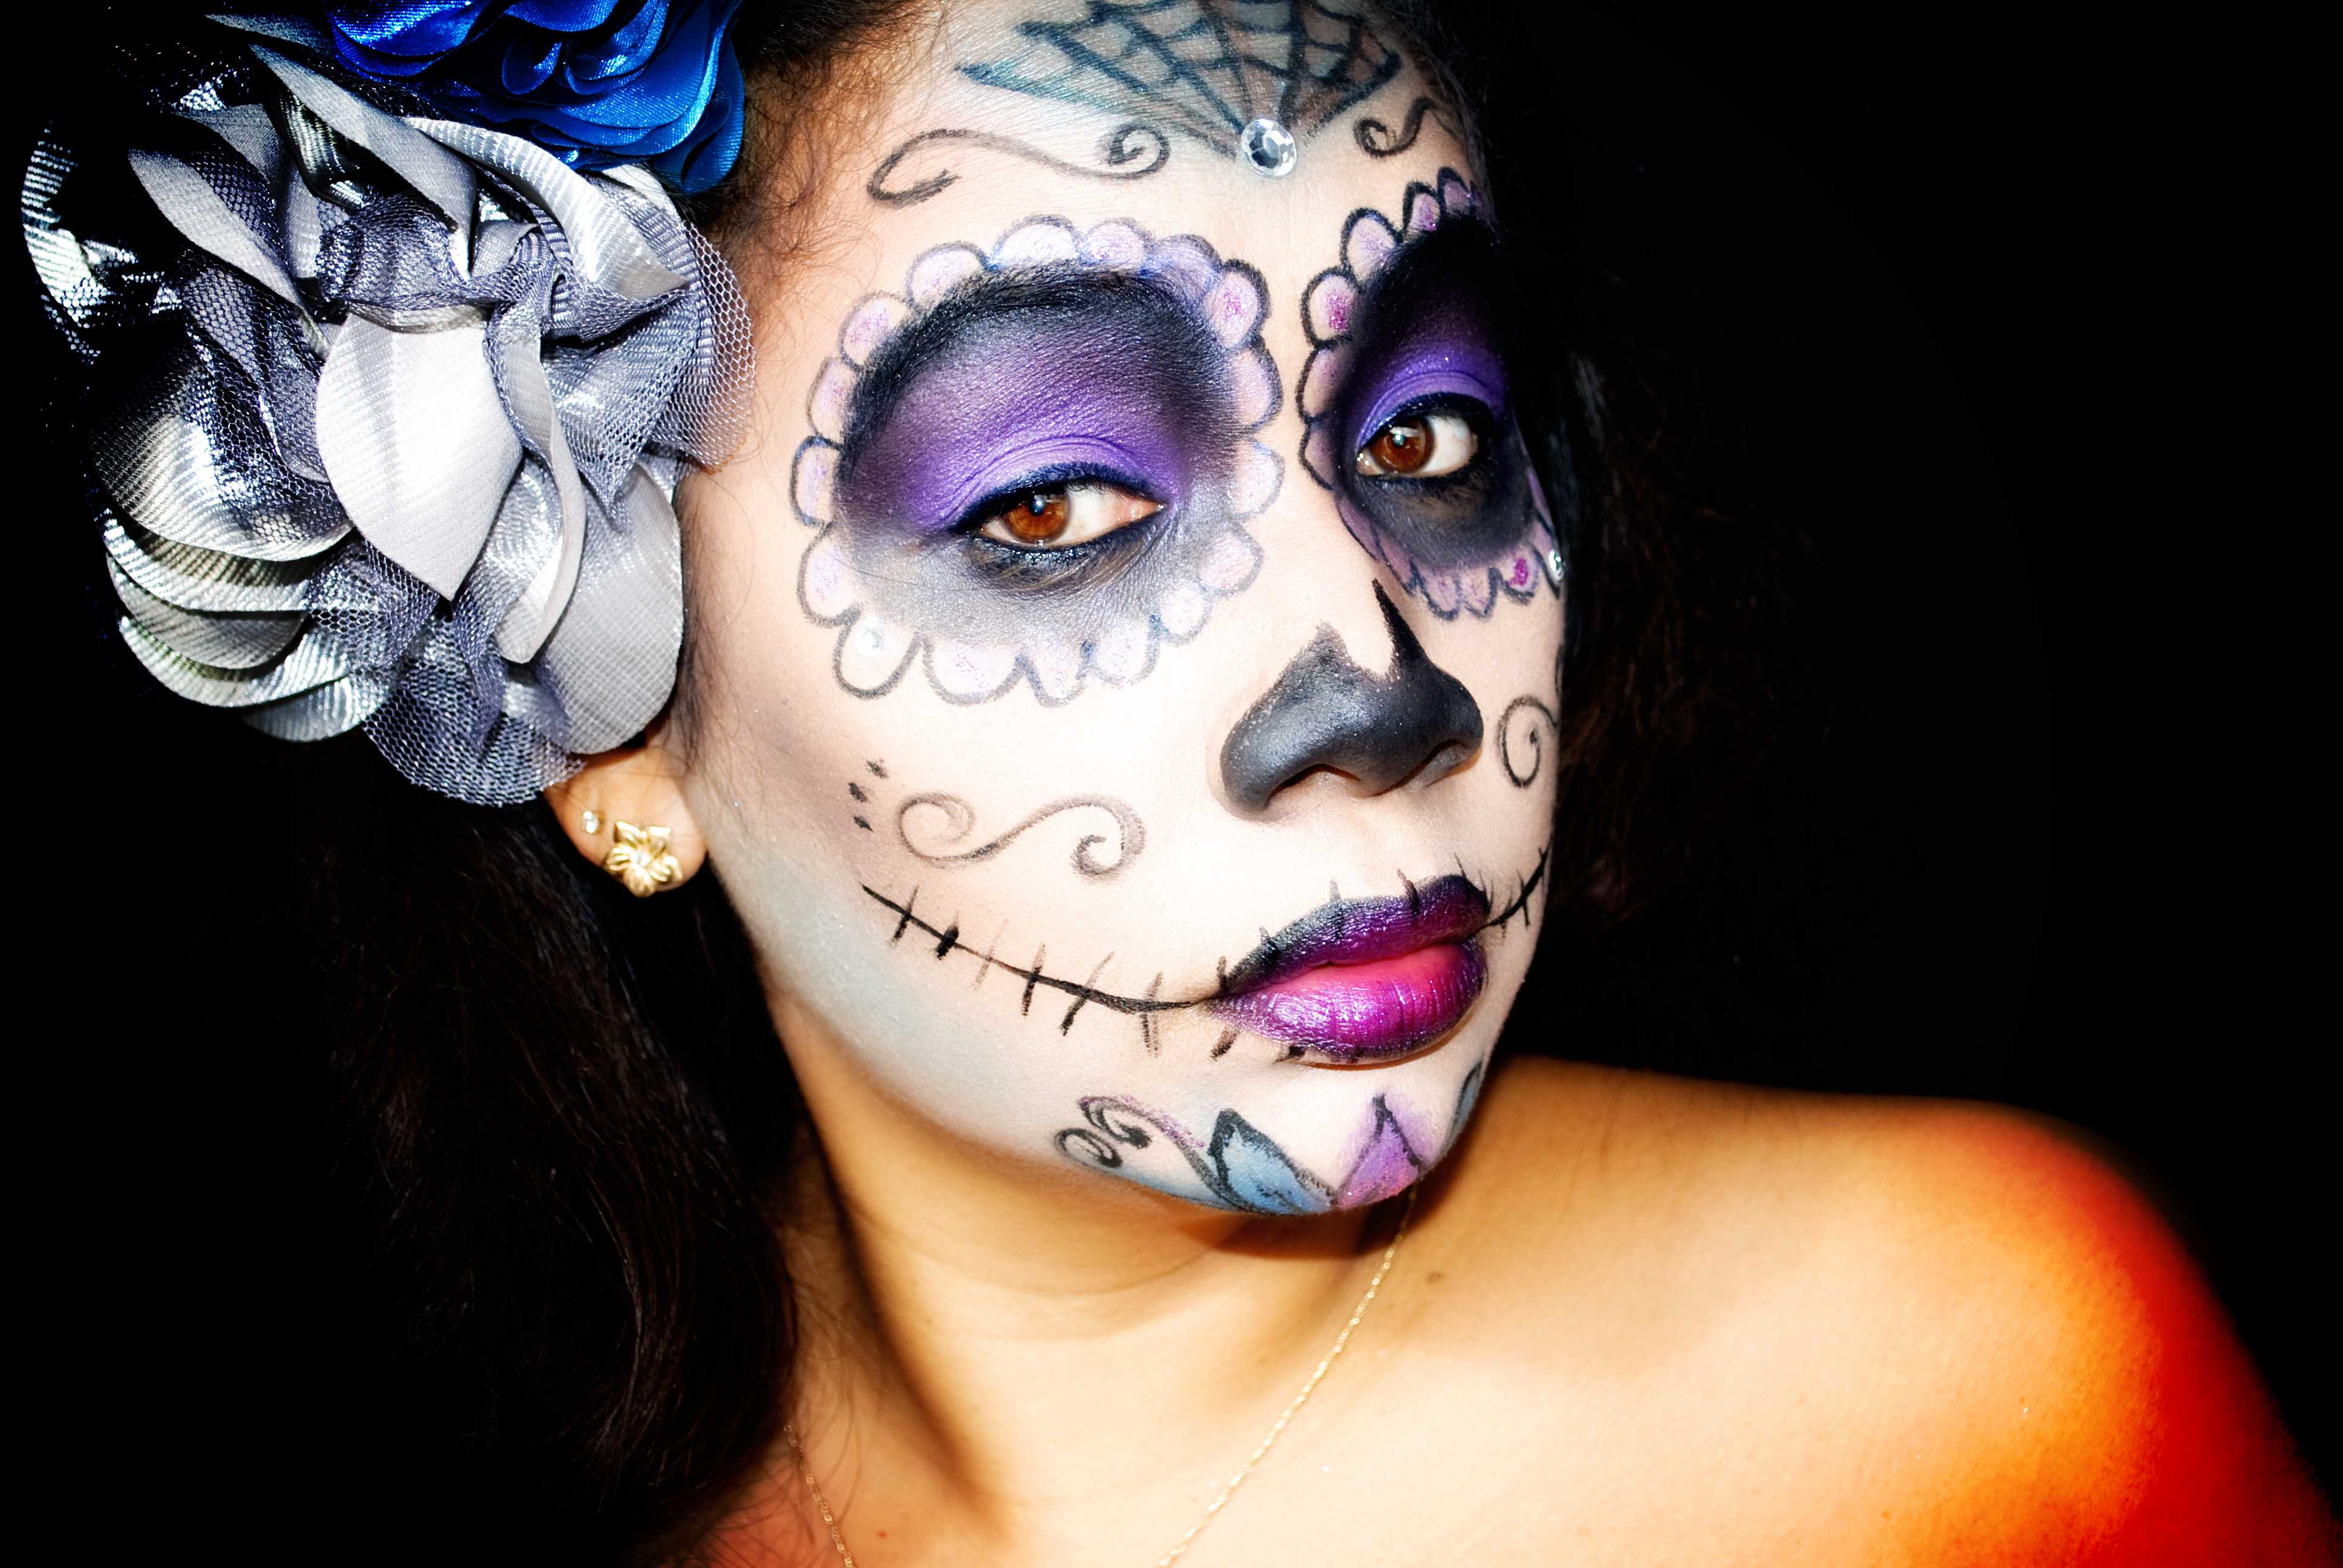 Как сделать красивый или страшный макияж для девушек на хэллоуин